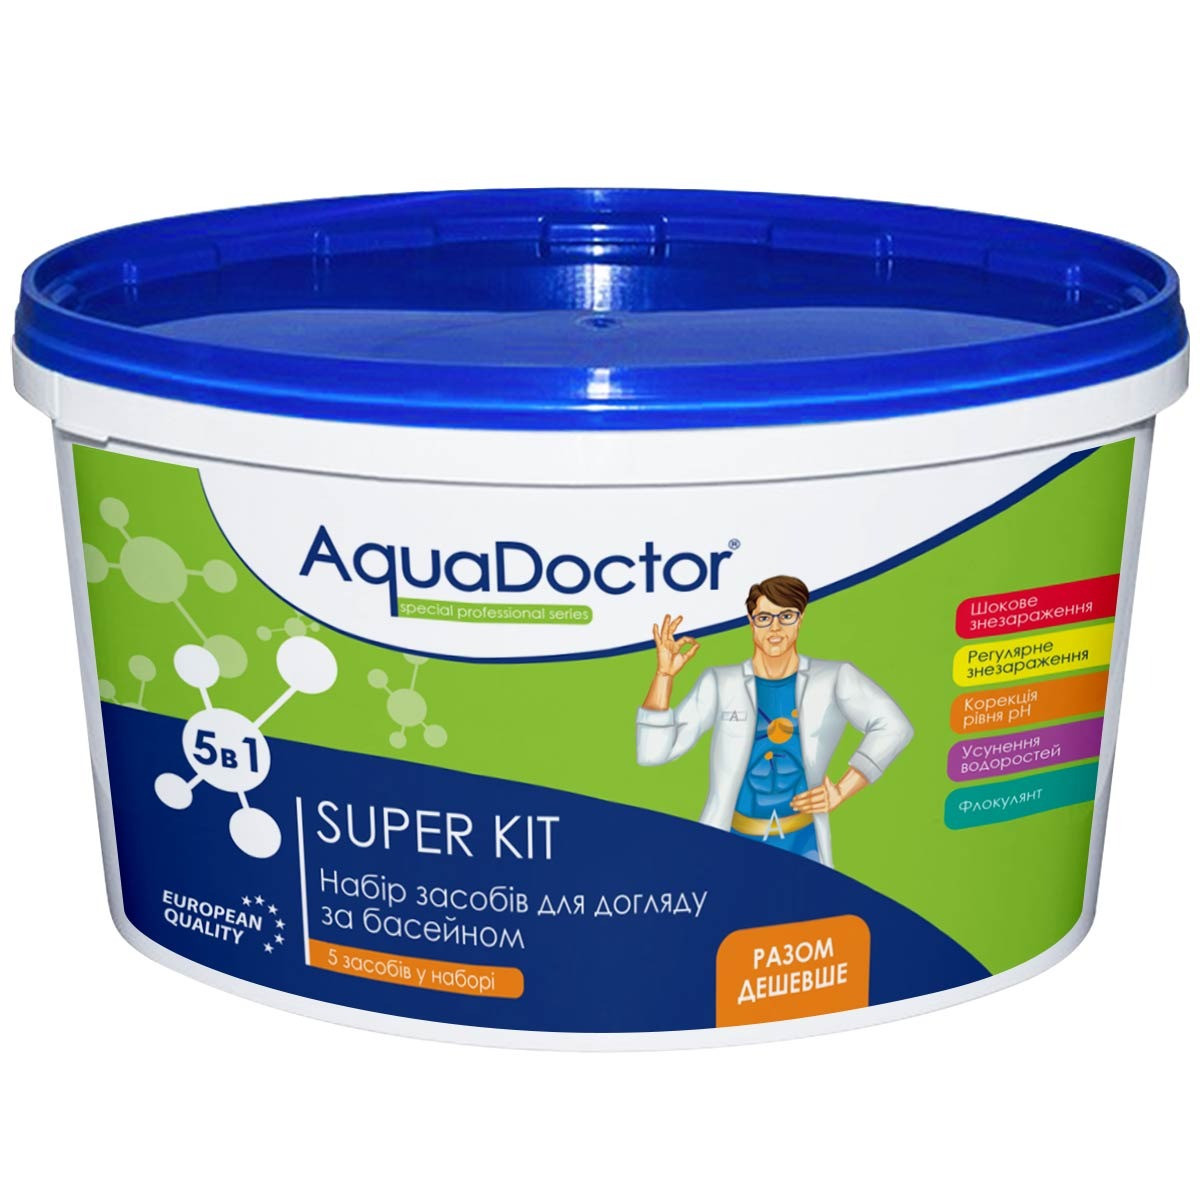 Super Kit 5 в 1 AquaDoctor універсальний набір хімії Аквадоктор для басейну